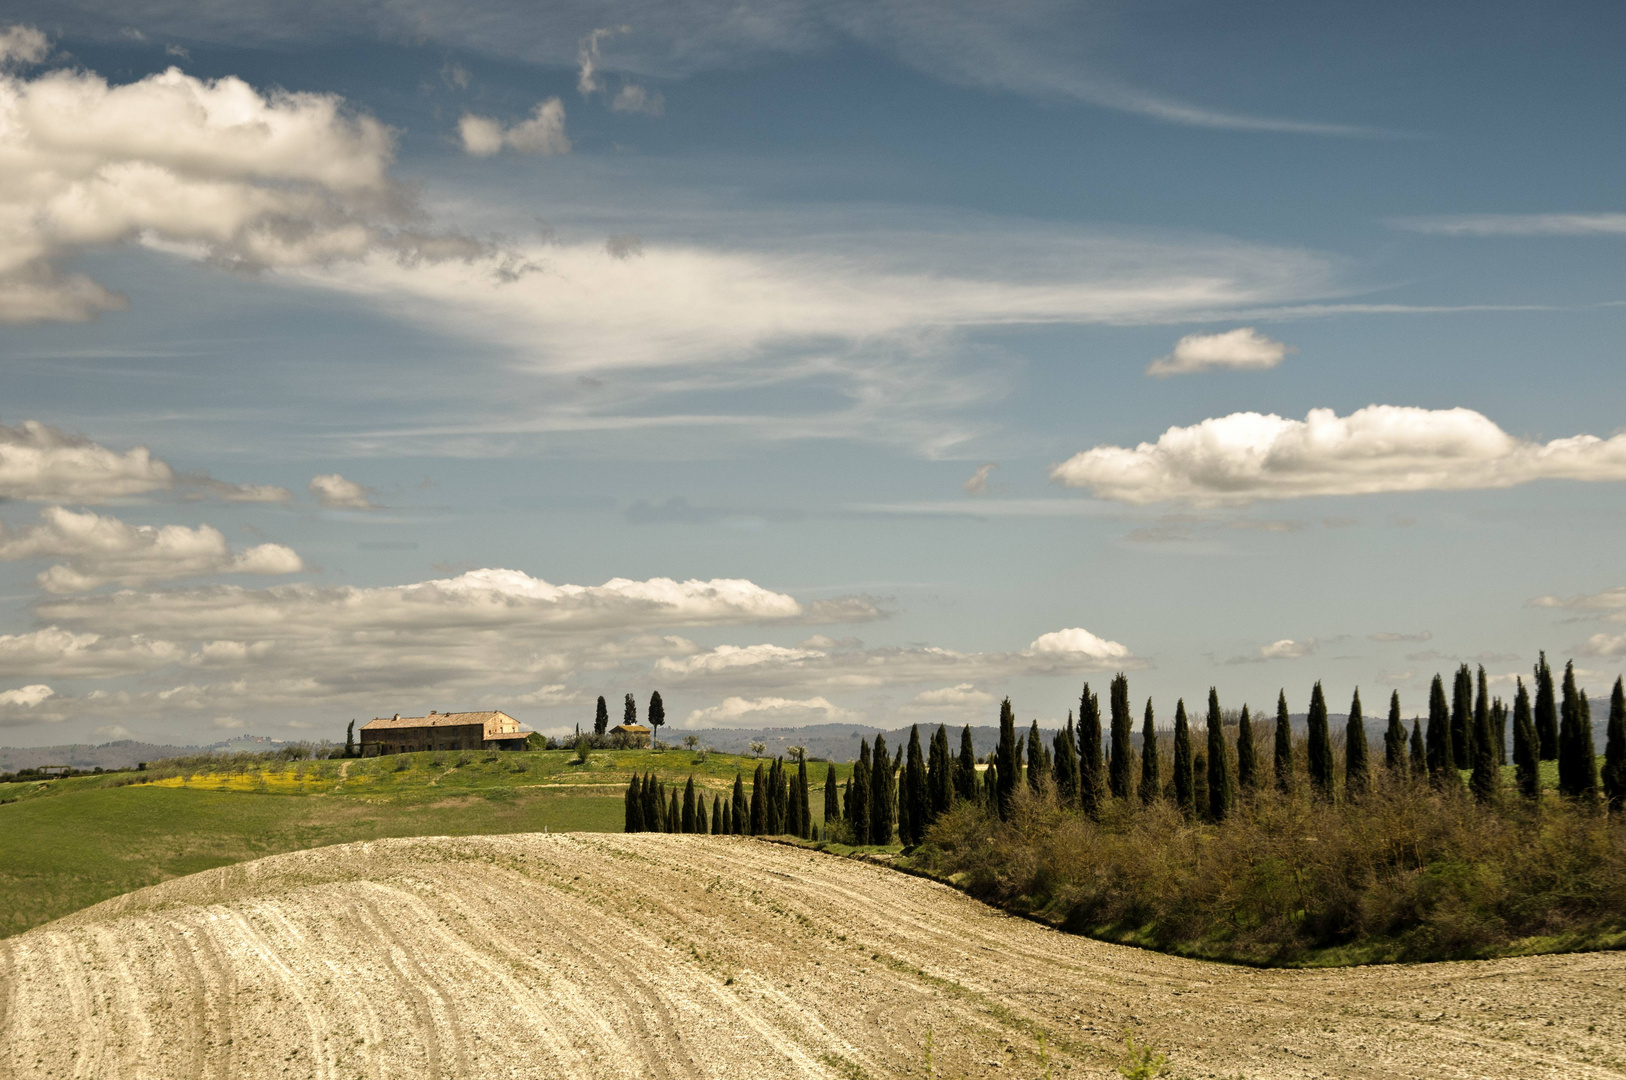 Frühjahrseindruck in der Toscana